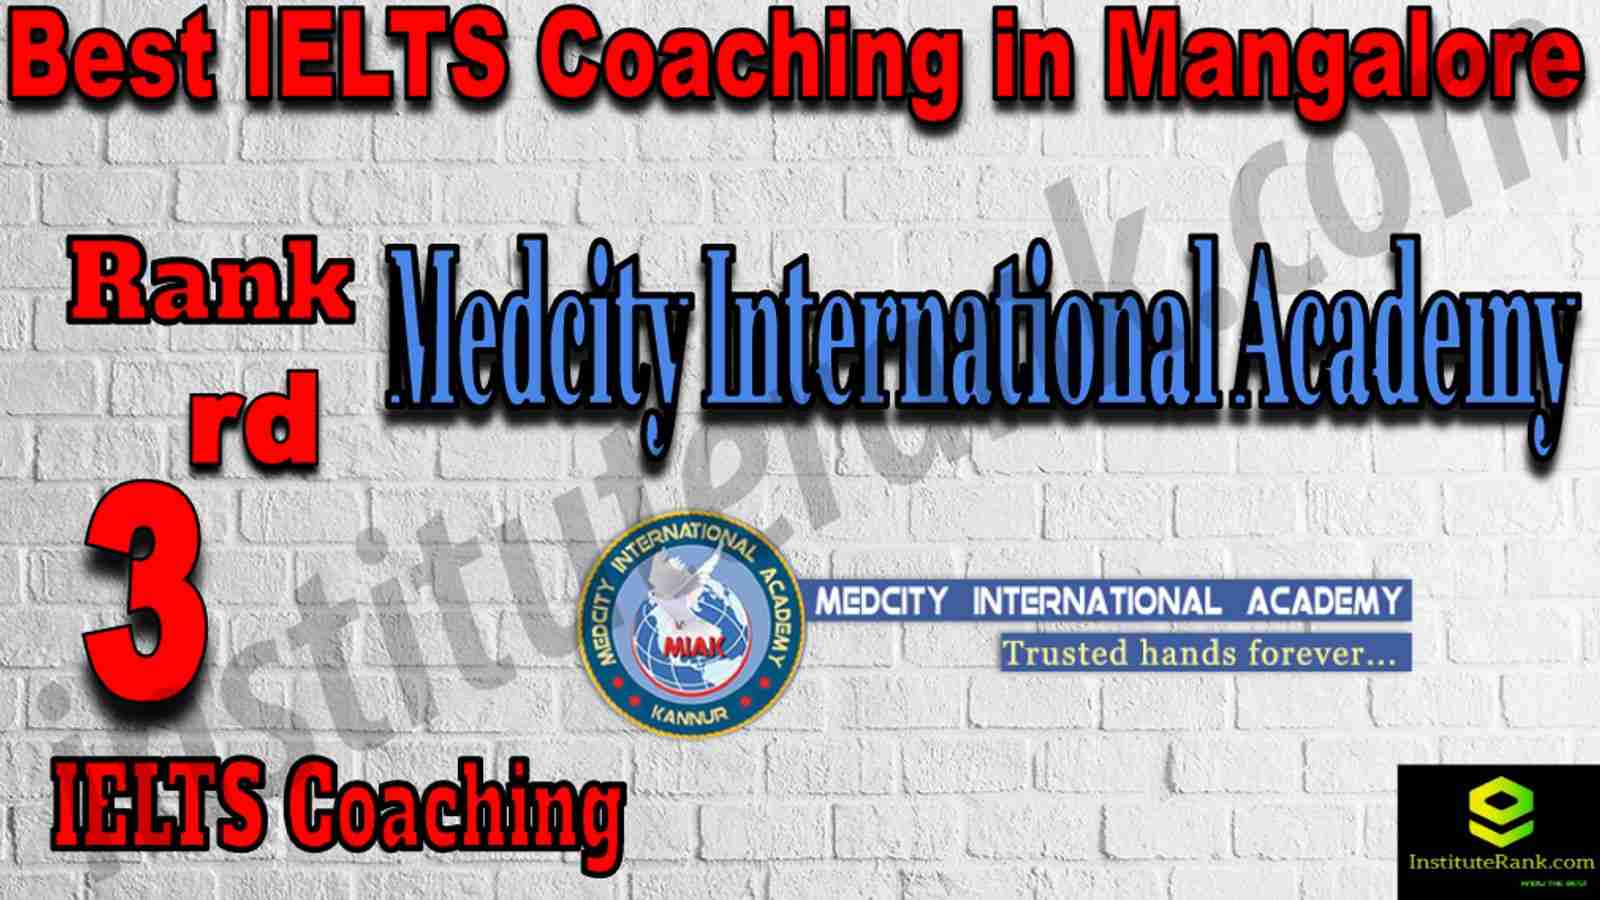 3rd Best IELTS Coaching in Mangalore